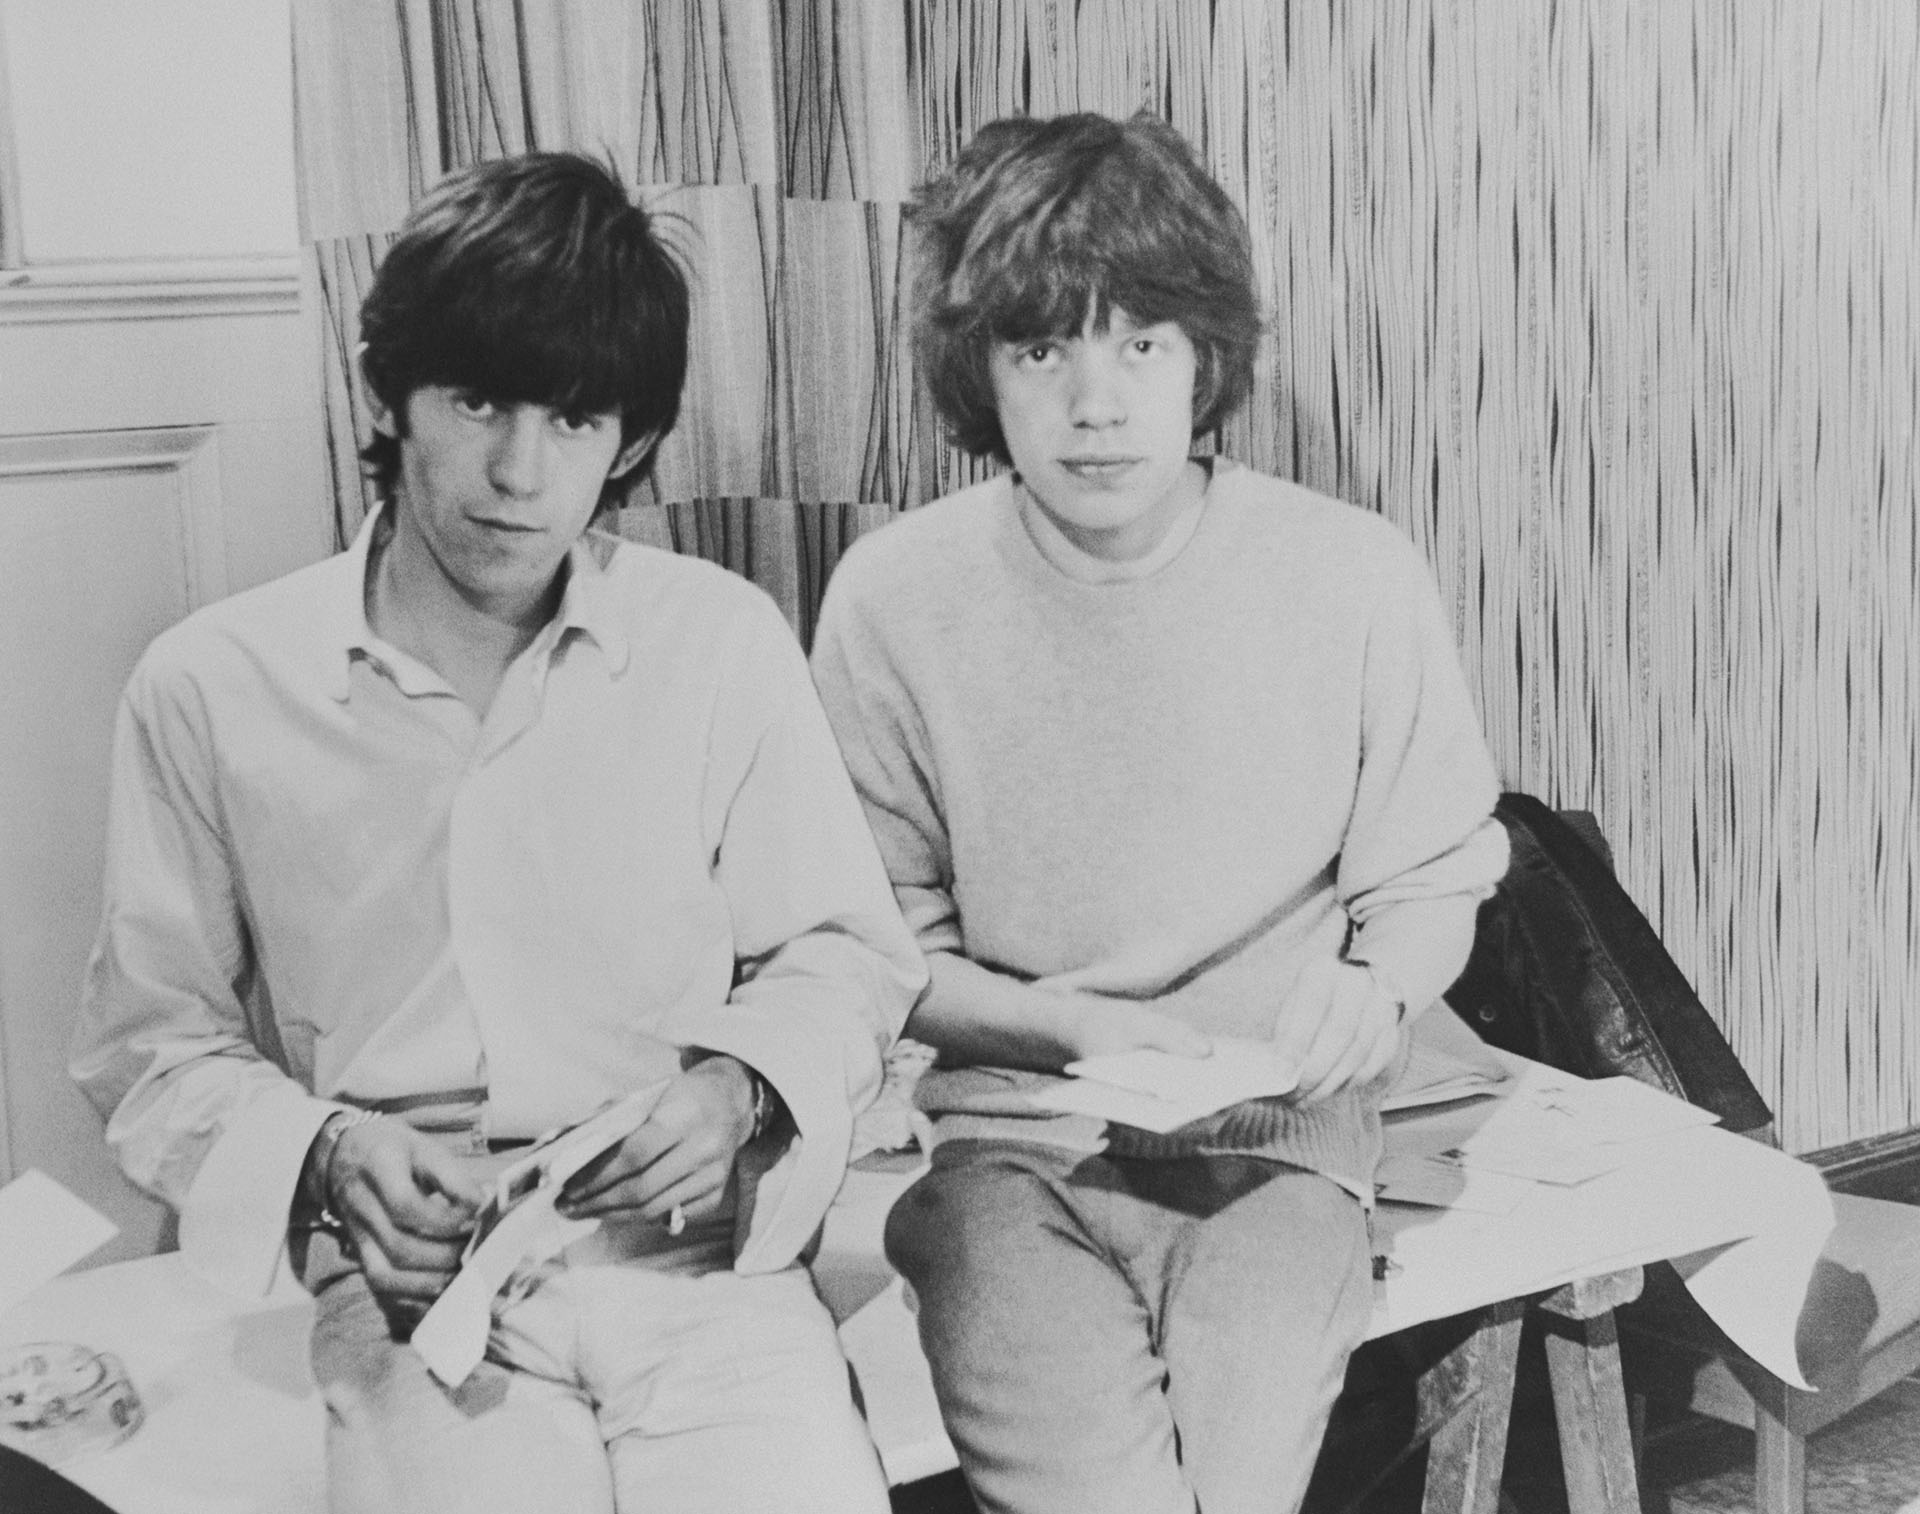 Mick Jagger y Keith Richards conforman una de las más grandes duplas del rock. Las peleas, las chicanas, las diferencias y hasta las indiscreciones de Keith en sus memorias no han logrado separarlos después de 60 años (Keystone Features/Hulton Archive/Getty Images)